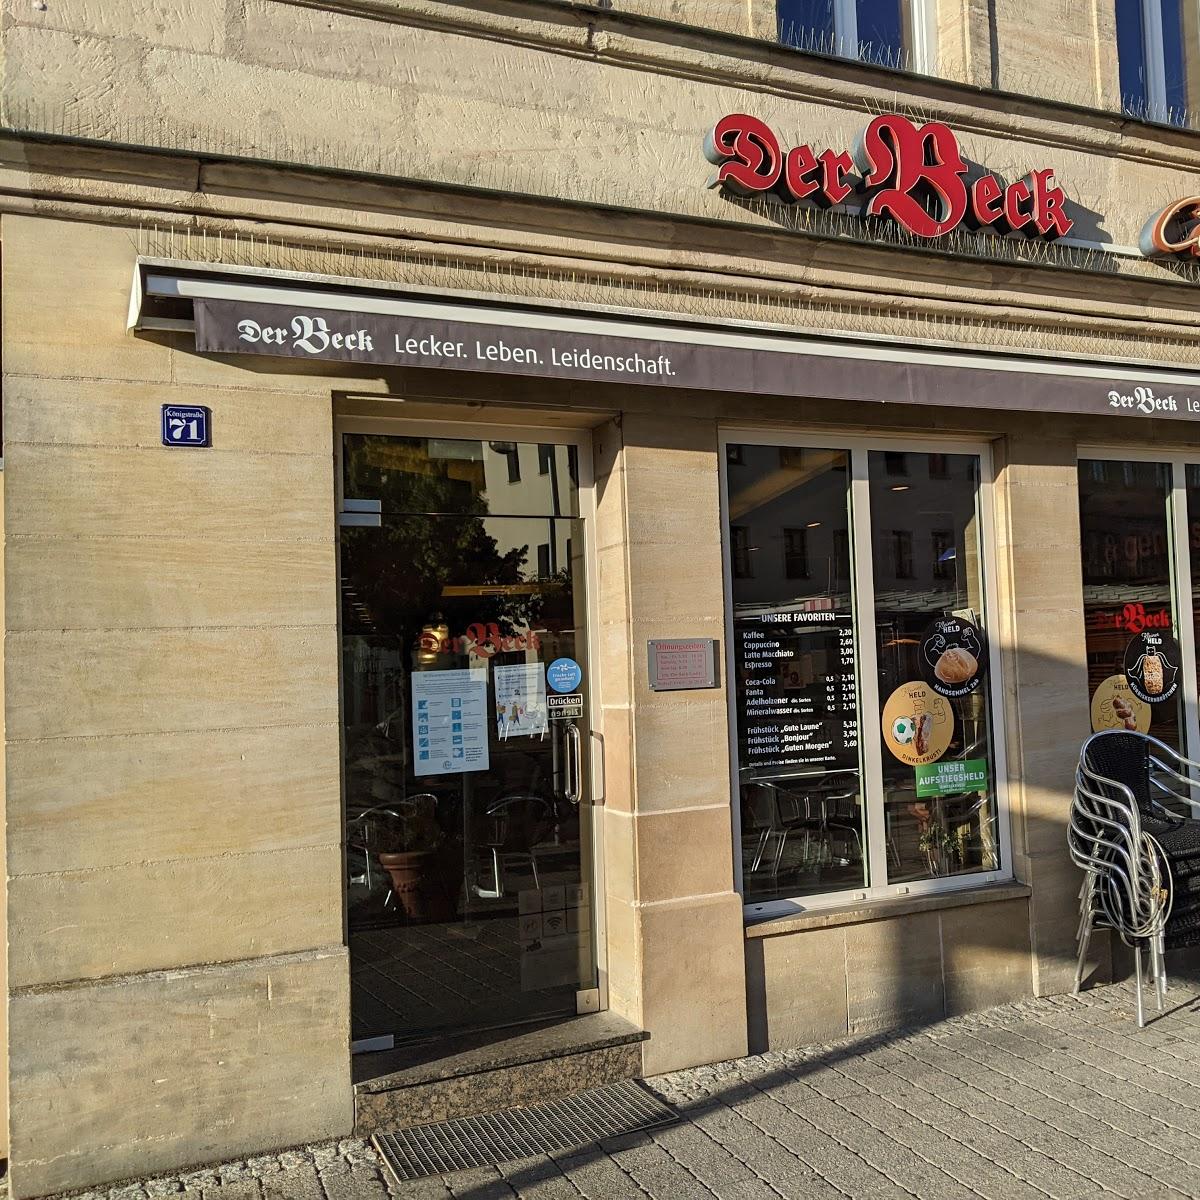 Restaurant "Der Beck" in Fürth